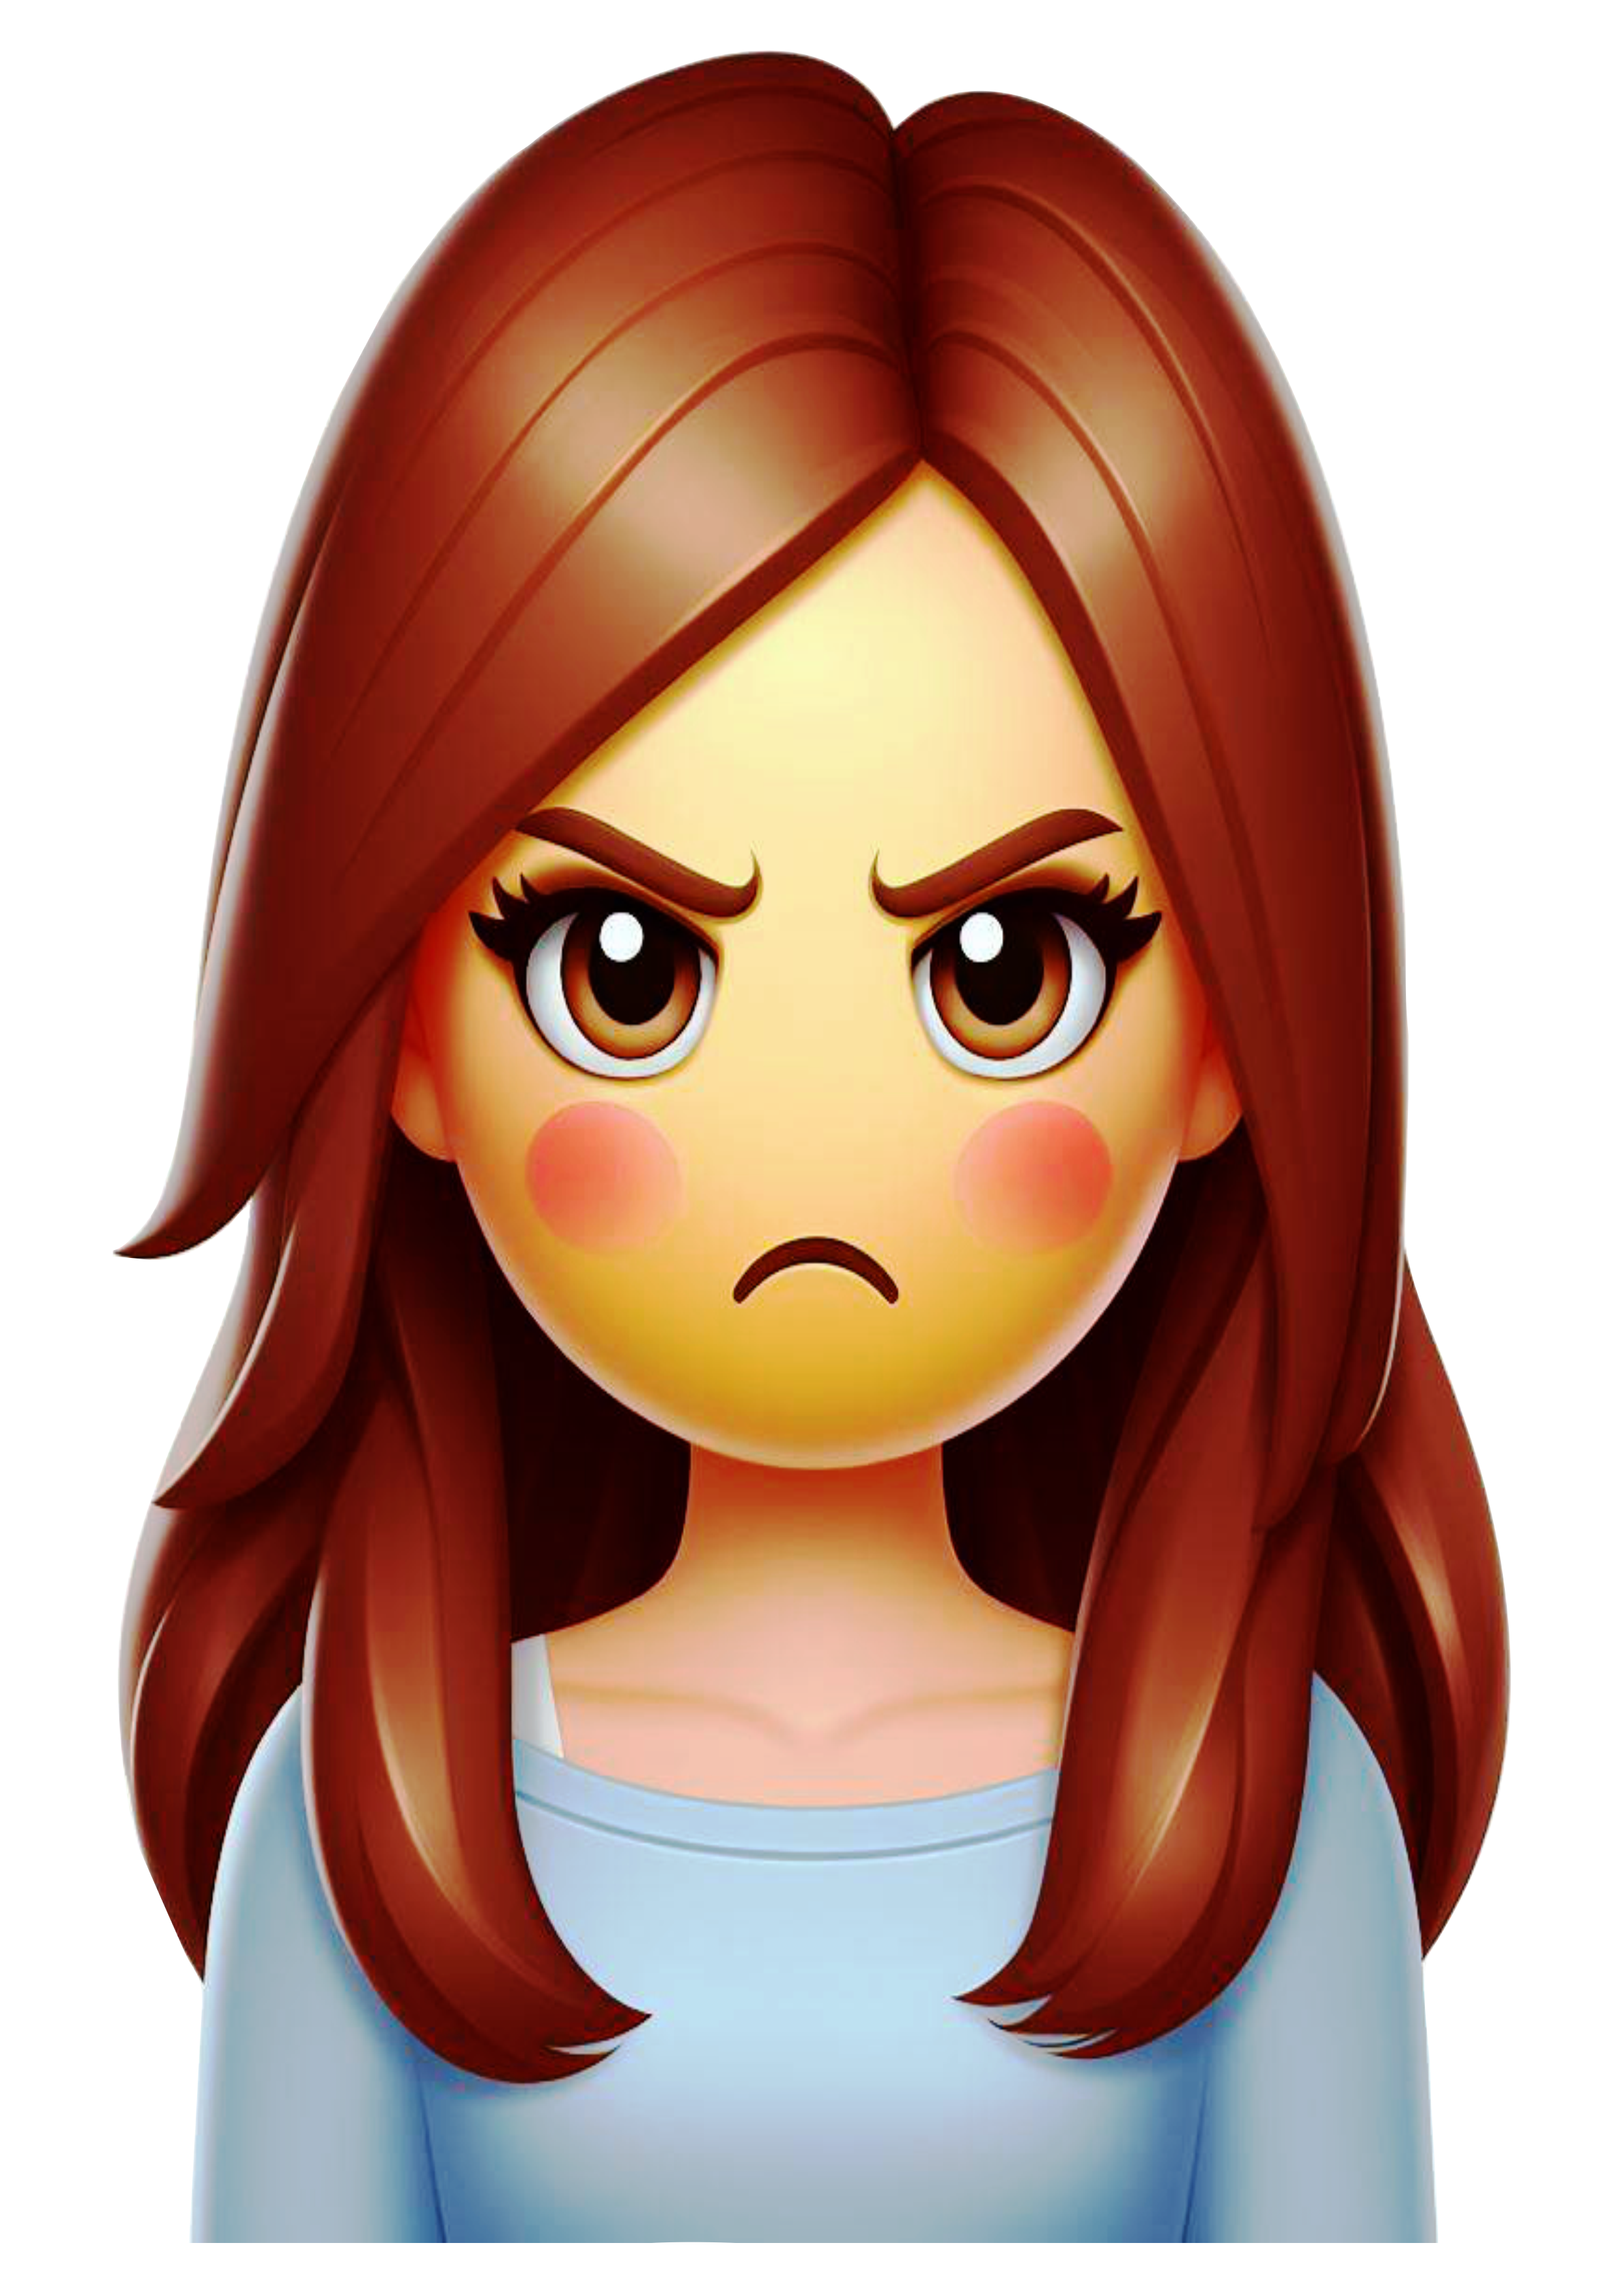 Mulher brava emoji figurinha emoticon para whatsapp facebook instagram png fundo transparente ilustração vetor clipart